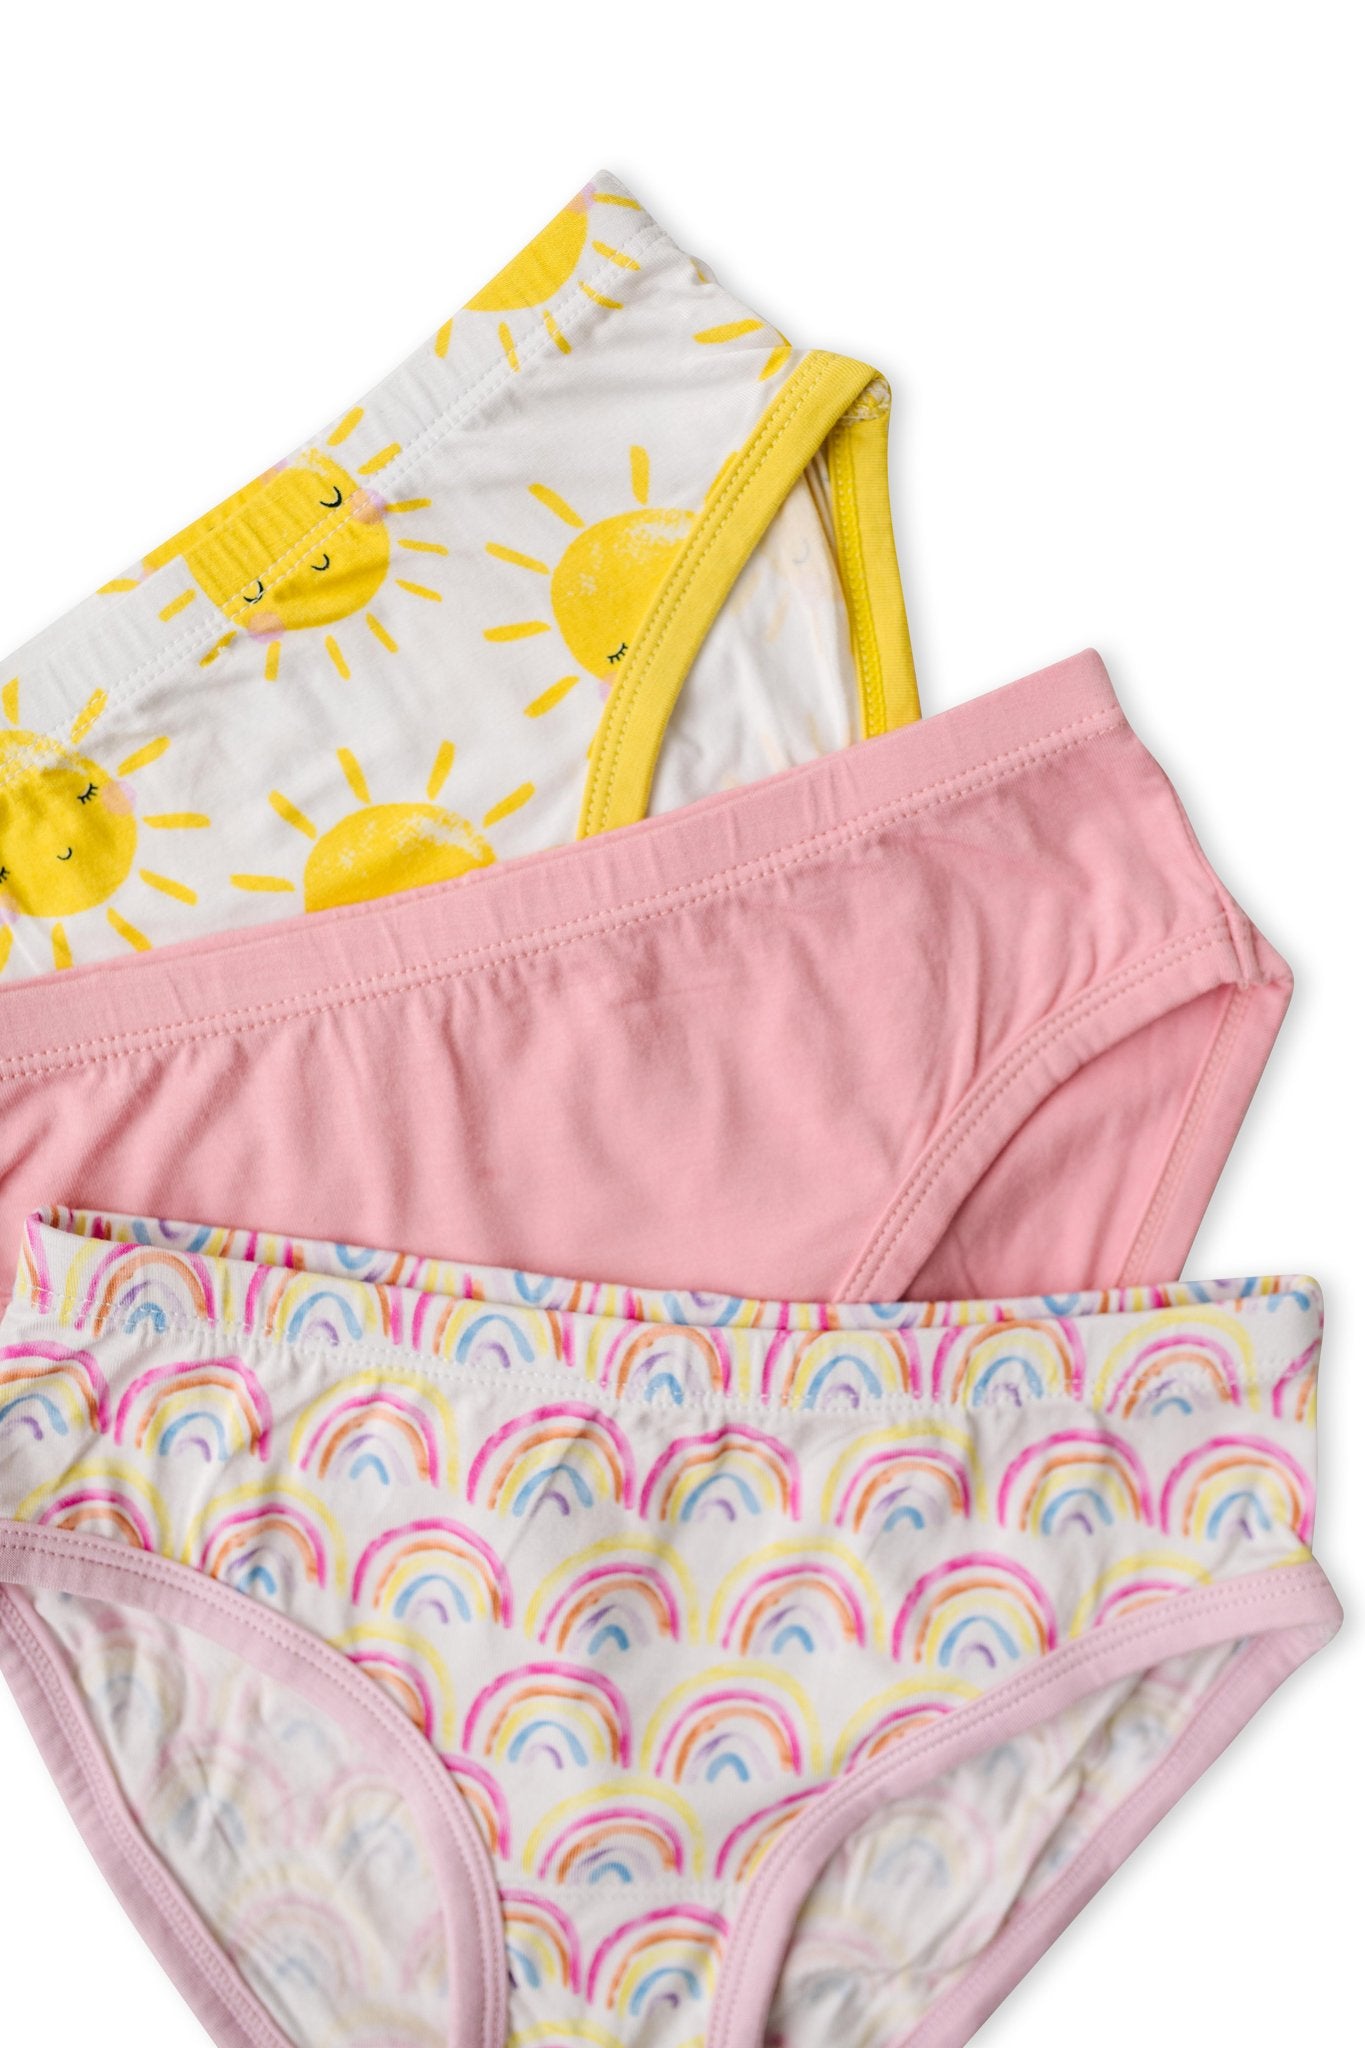 Tiny Undies Unisex Baby Underwear 3 Pack (12 Months, Bear